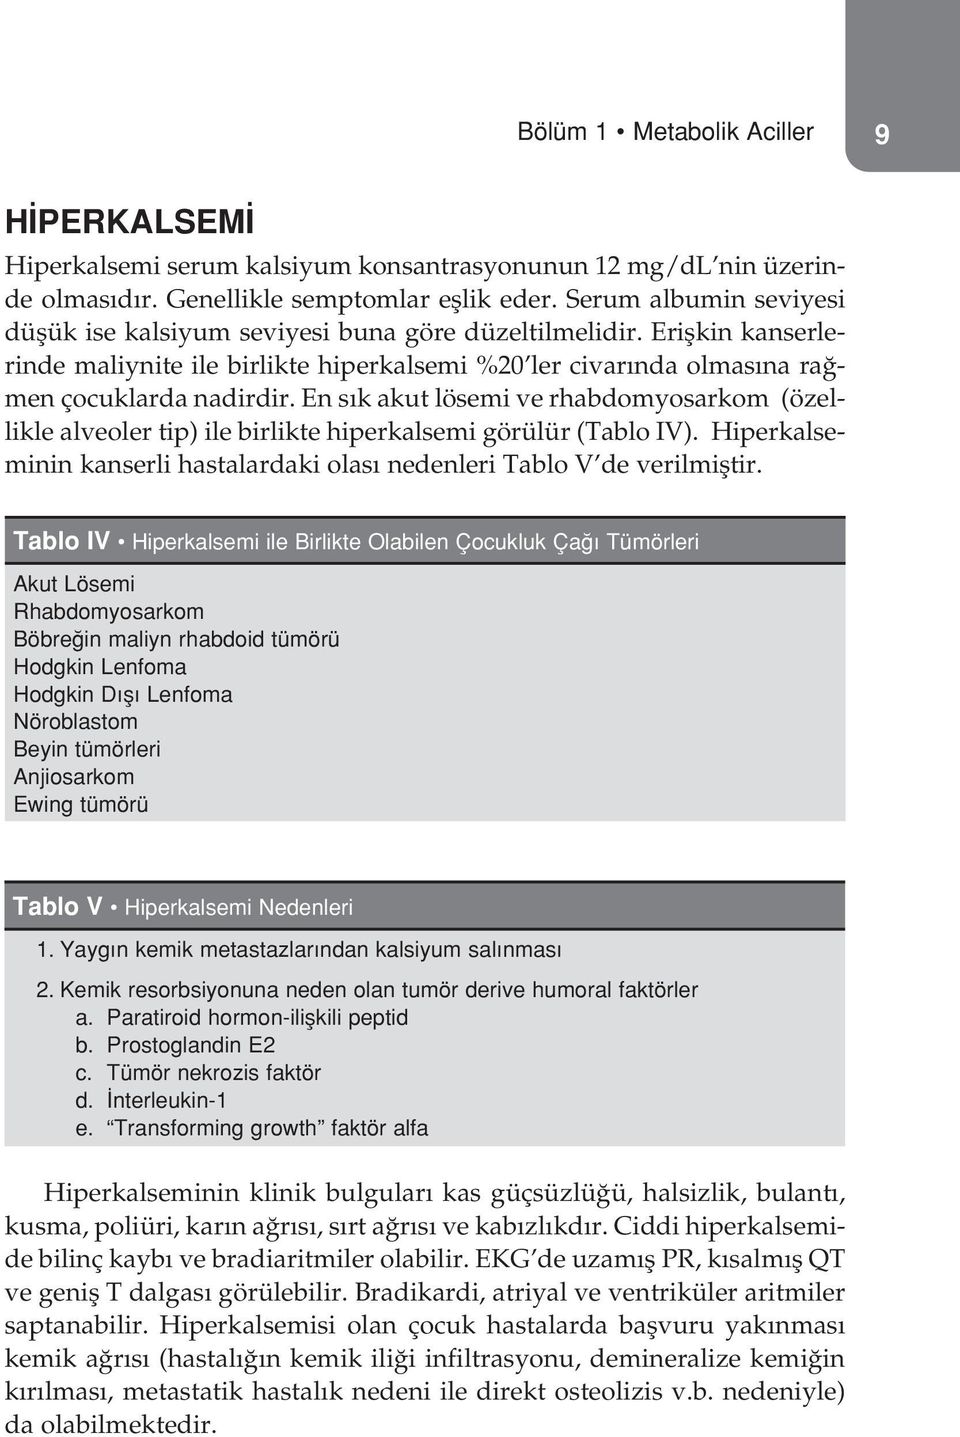 En s k akut lösemi ve rhabdomyosarkom (özellikle alveoler tip) ile birlikte hiperkalsemi görülür (Tablo IV). Hiperkalseminin kanserli hastalardaki olas nedenleri Tablo V de verilmifltir.